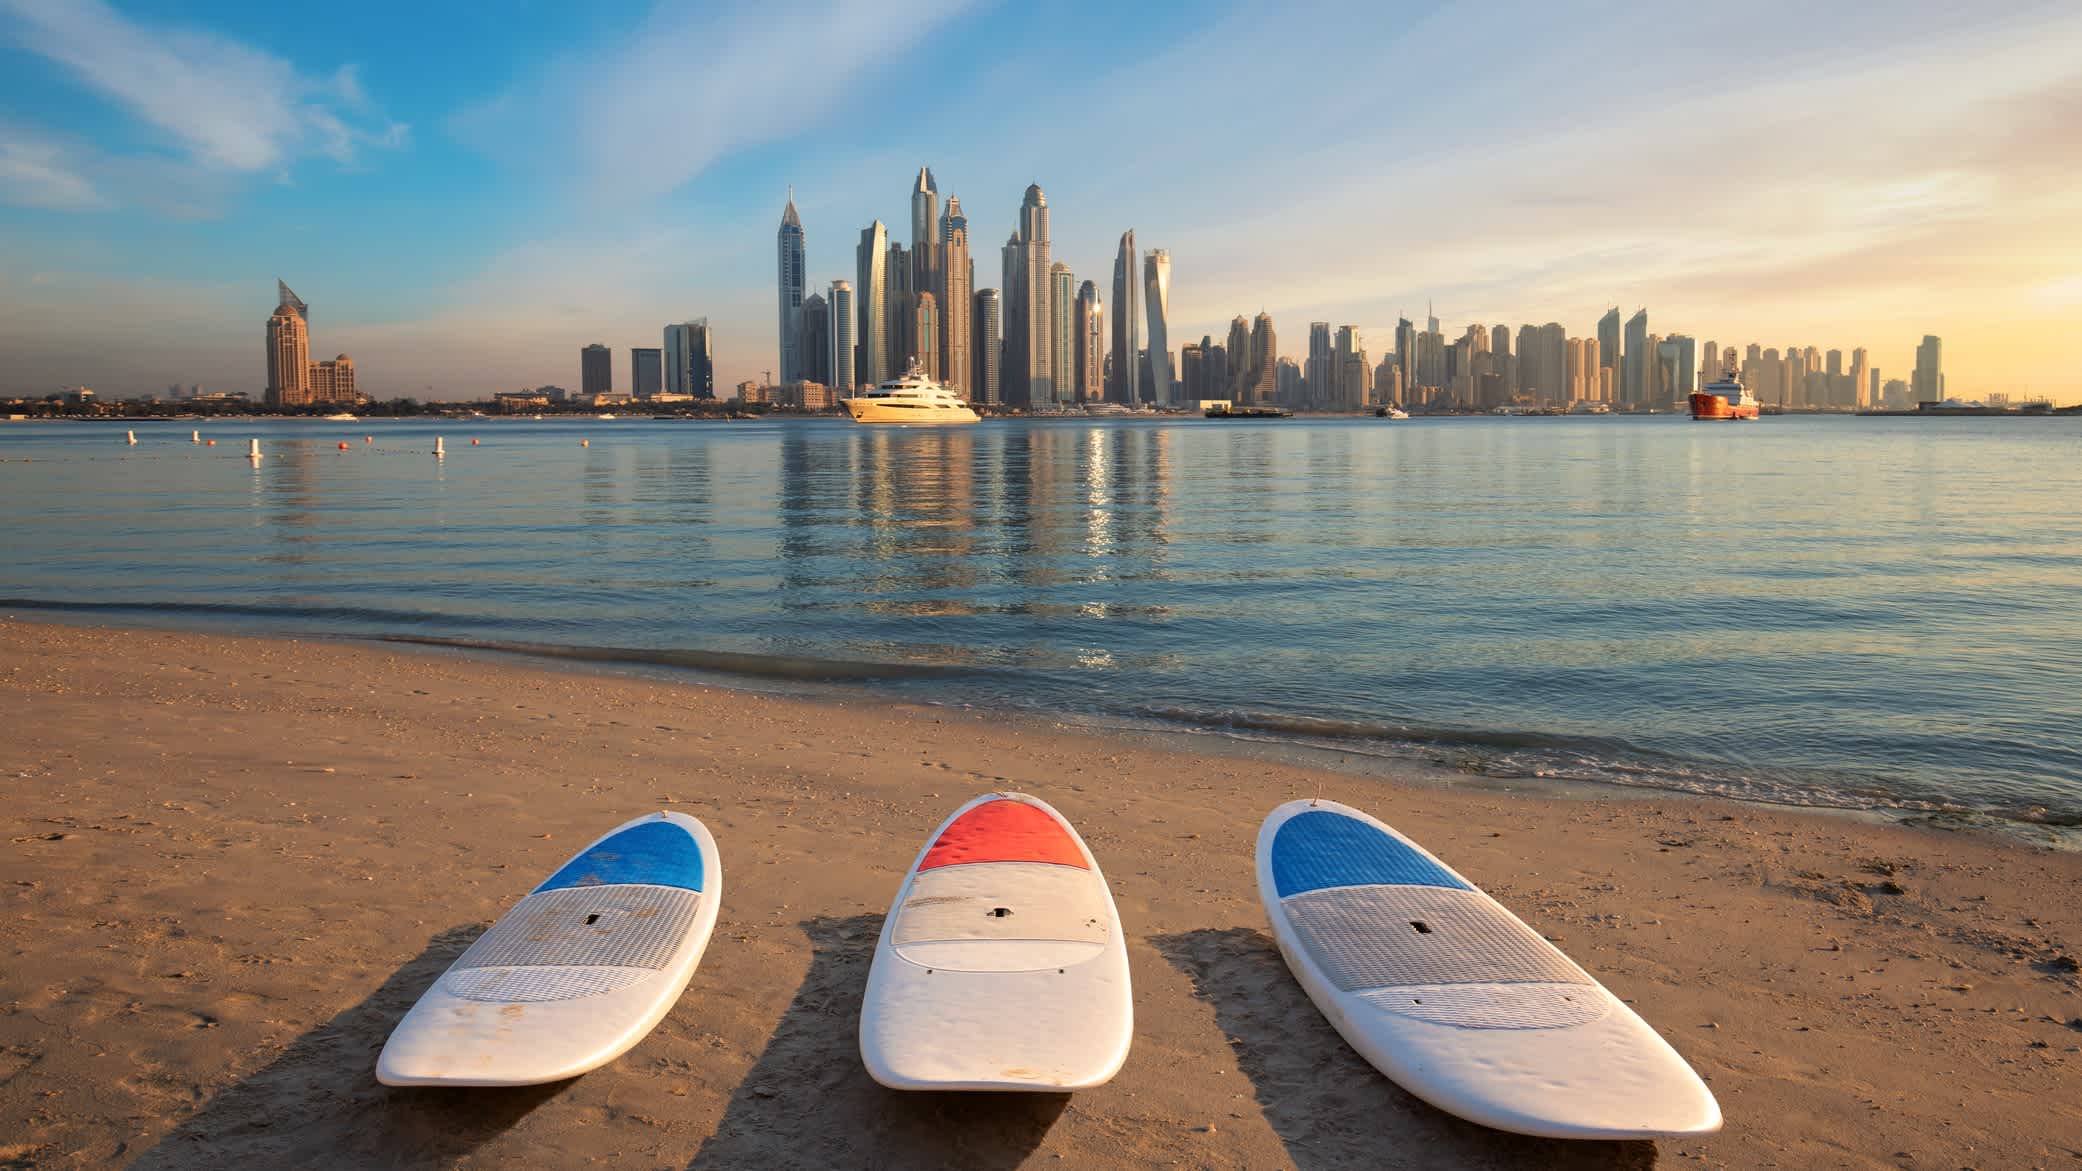 Surfbrettern am Strand mit dem Wolkenkratzer im Hintergrund, Dubai, VAE. 

